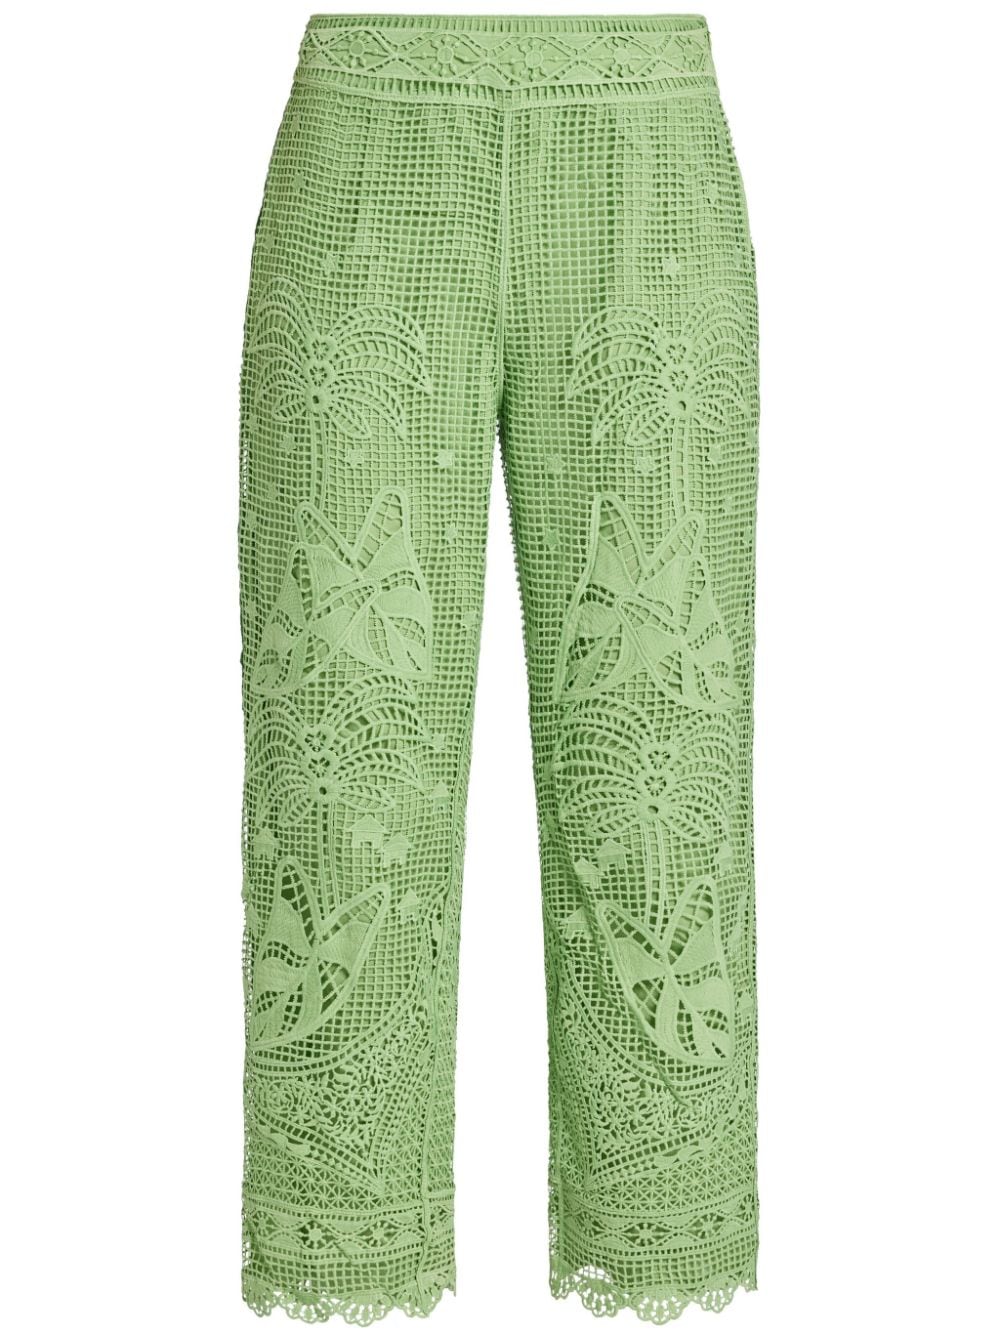 FARM Rio Guipire embroidered trousers - Green von FARM Rio